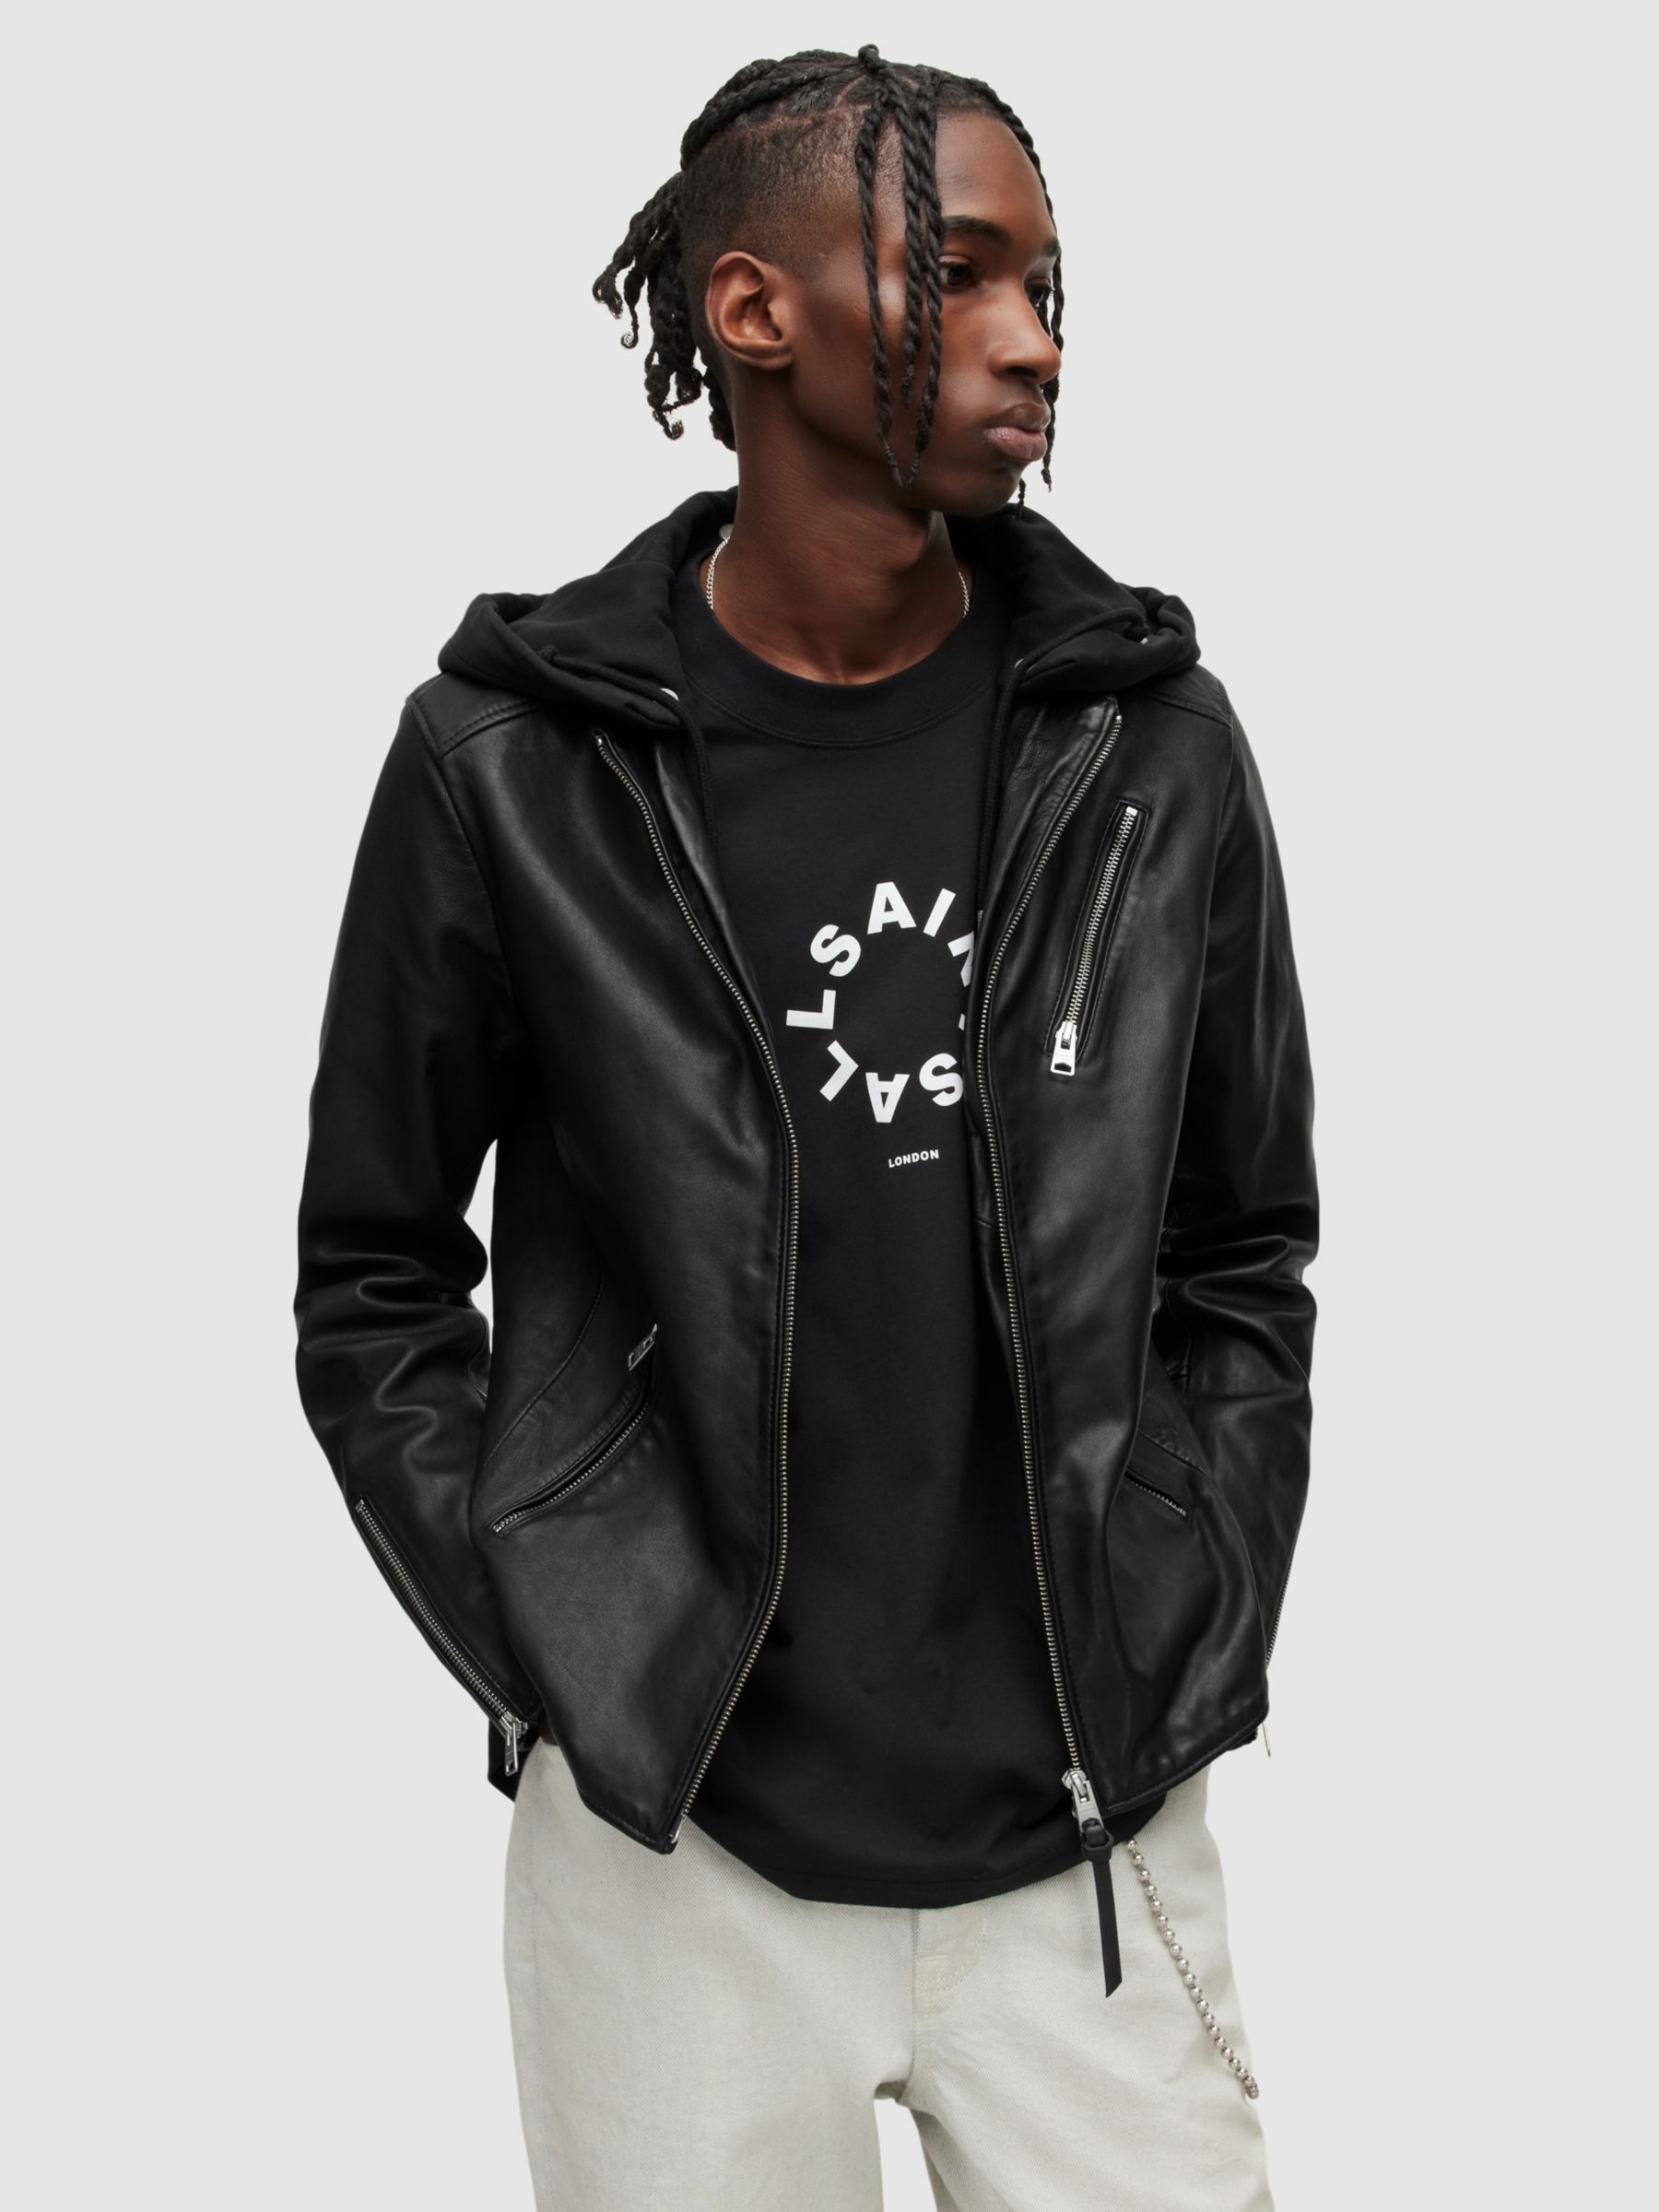 Black 'Harwood' leather jacket AllSaints - Vitkac Canada